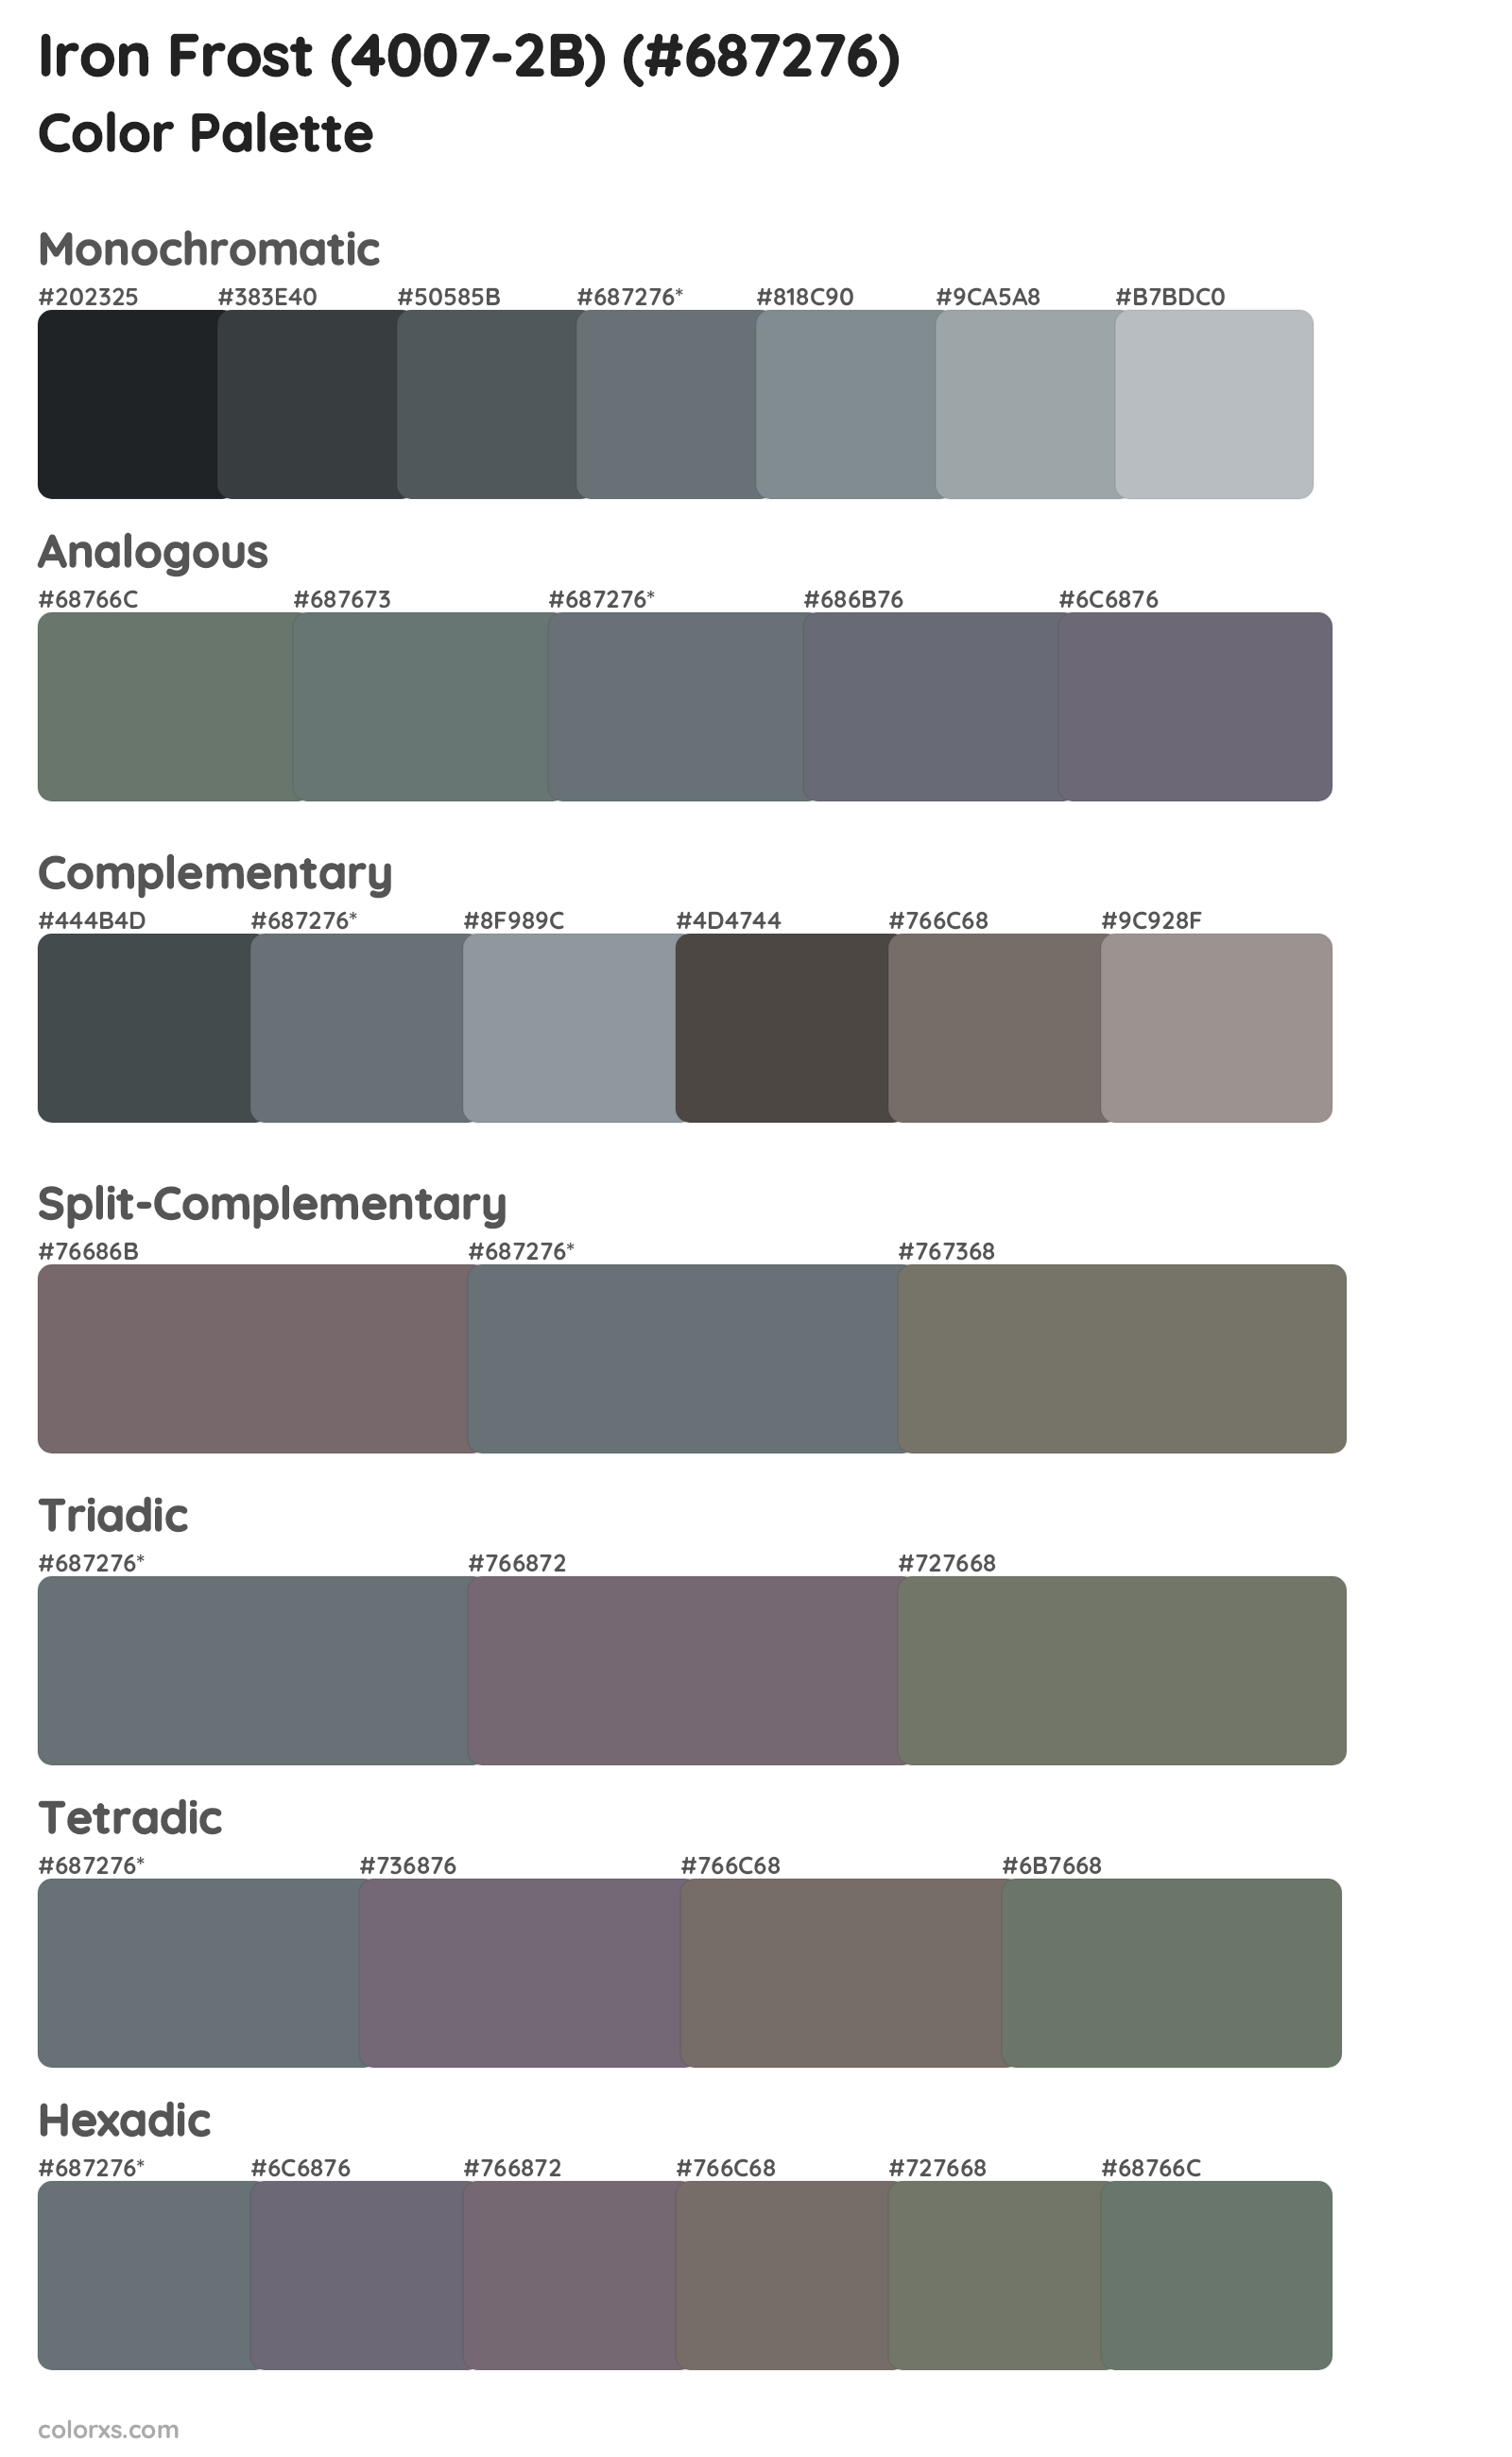 Iron Frost (4007-2B) Color Scheme Palettes